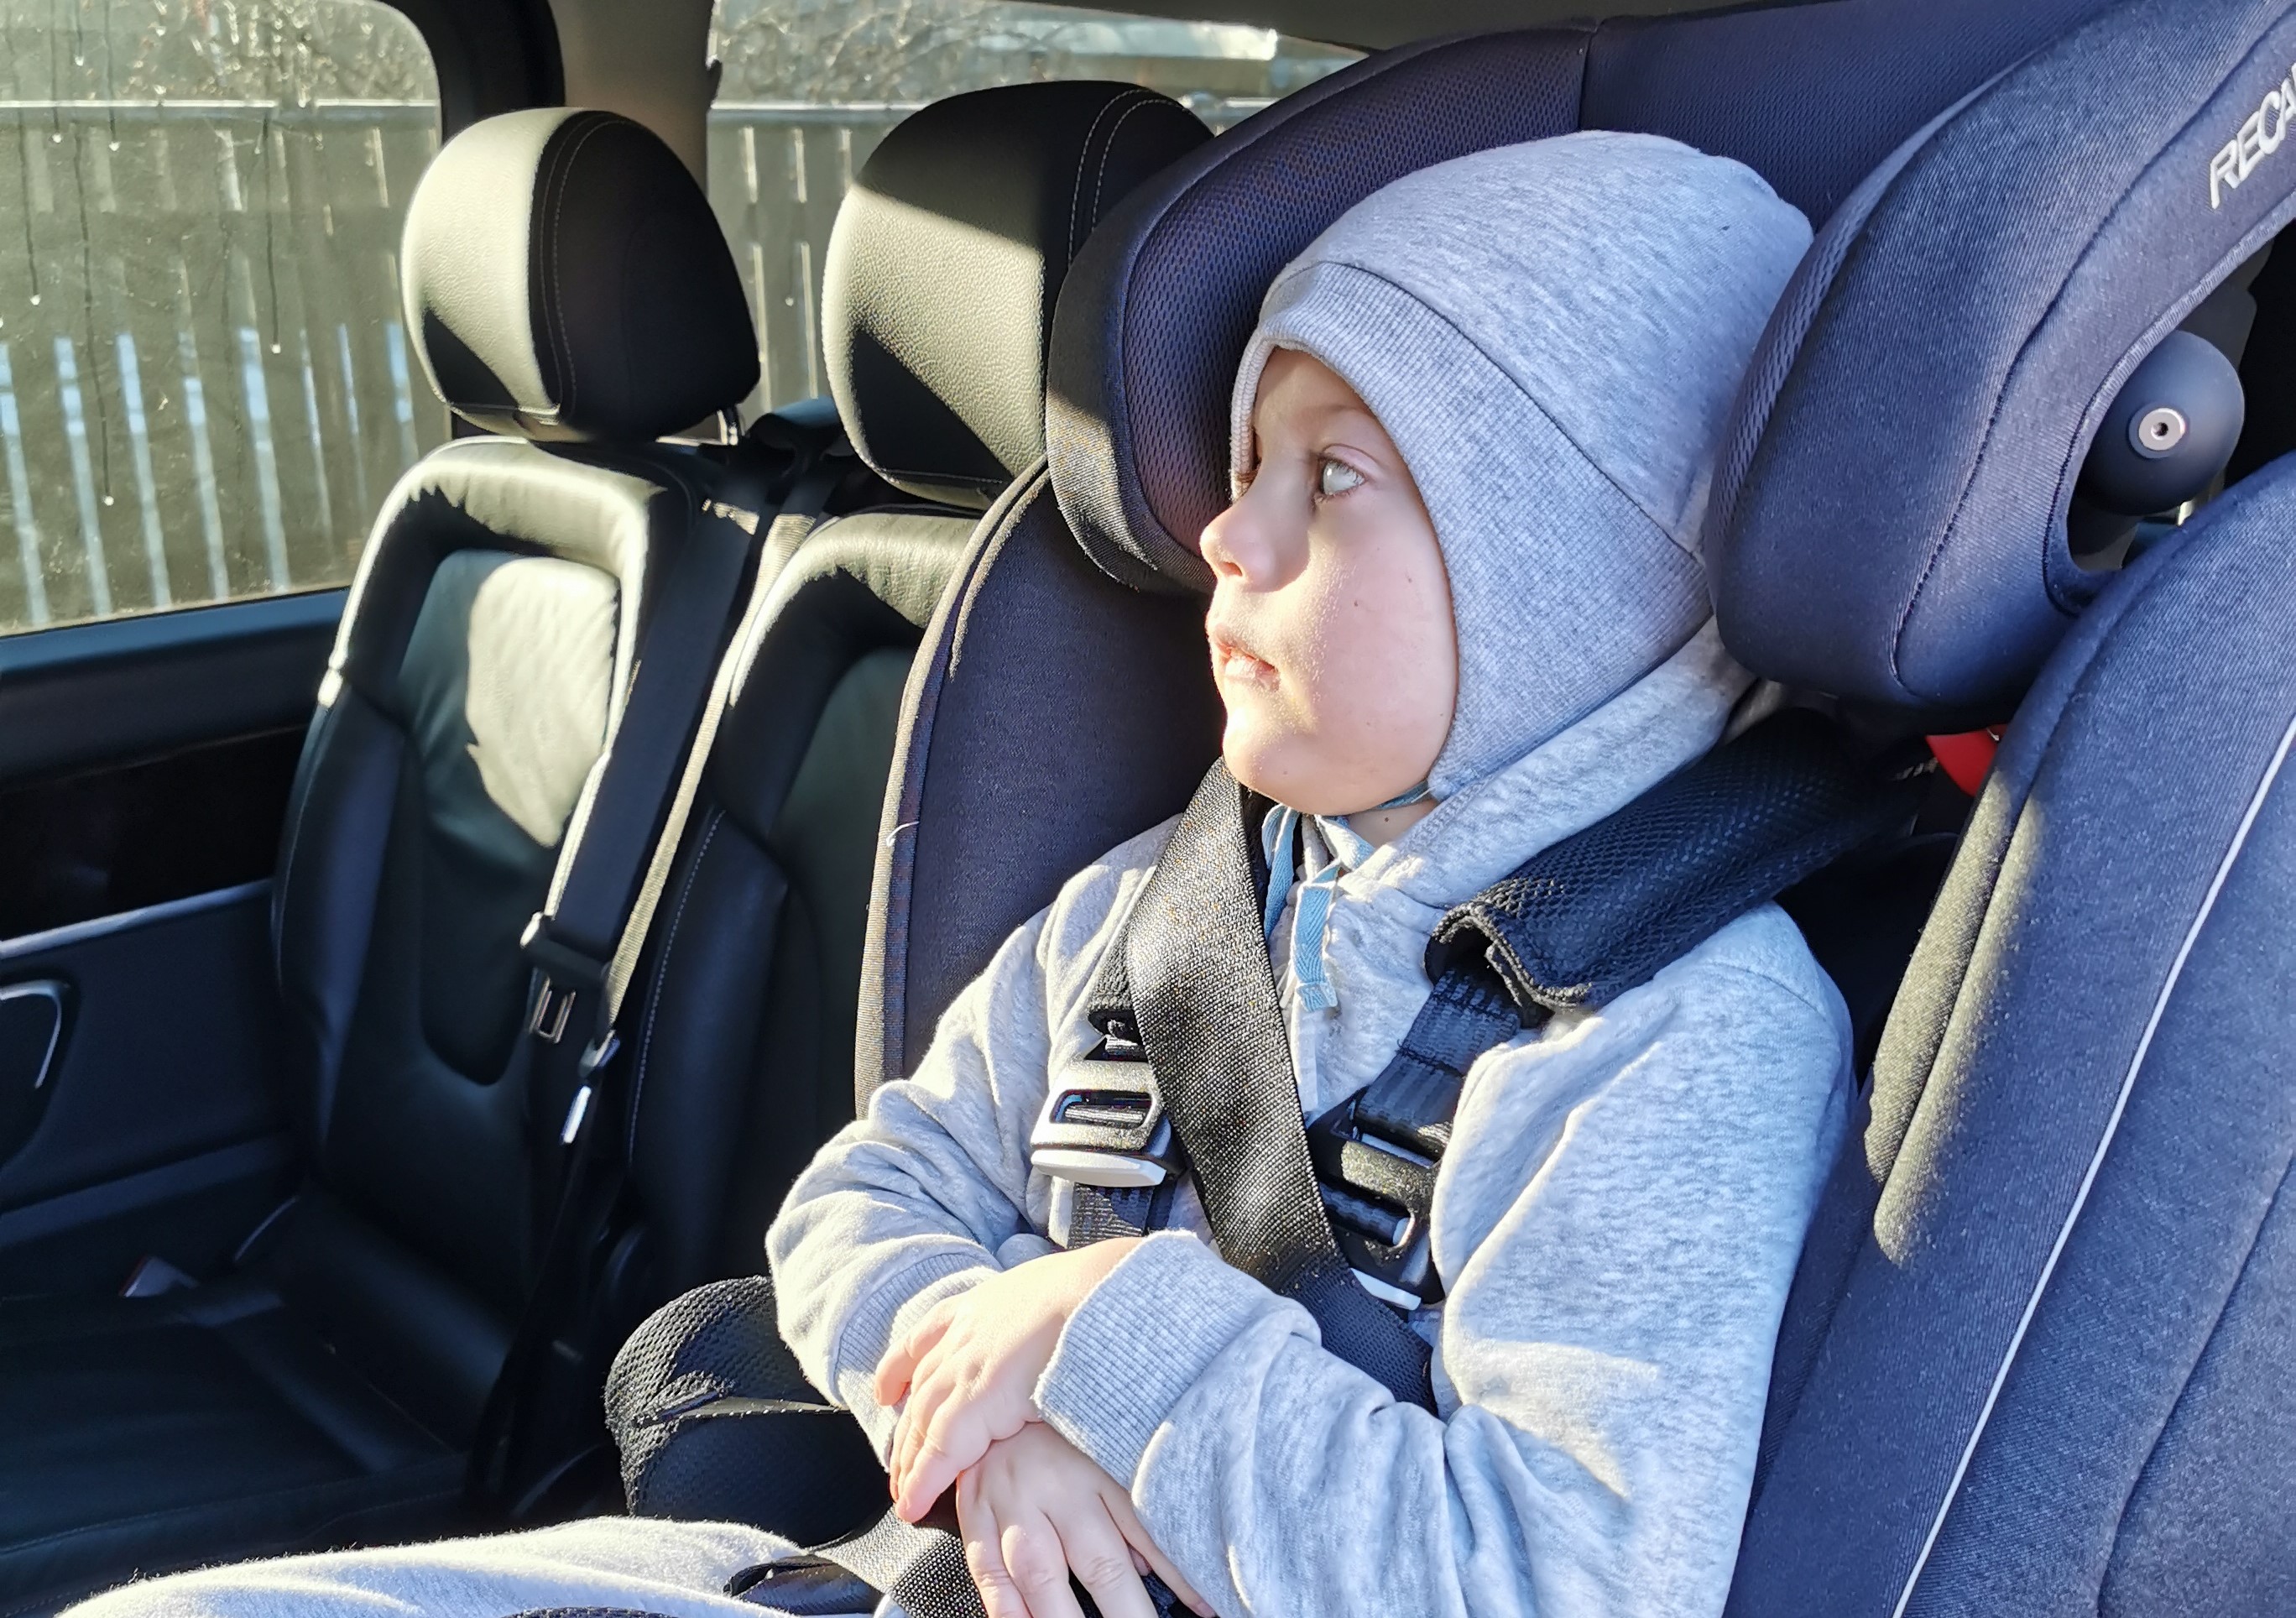 Kolektīva vēstule: par tehnisko palīglīdzekli – specializētu autosēdeklīti bērnam